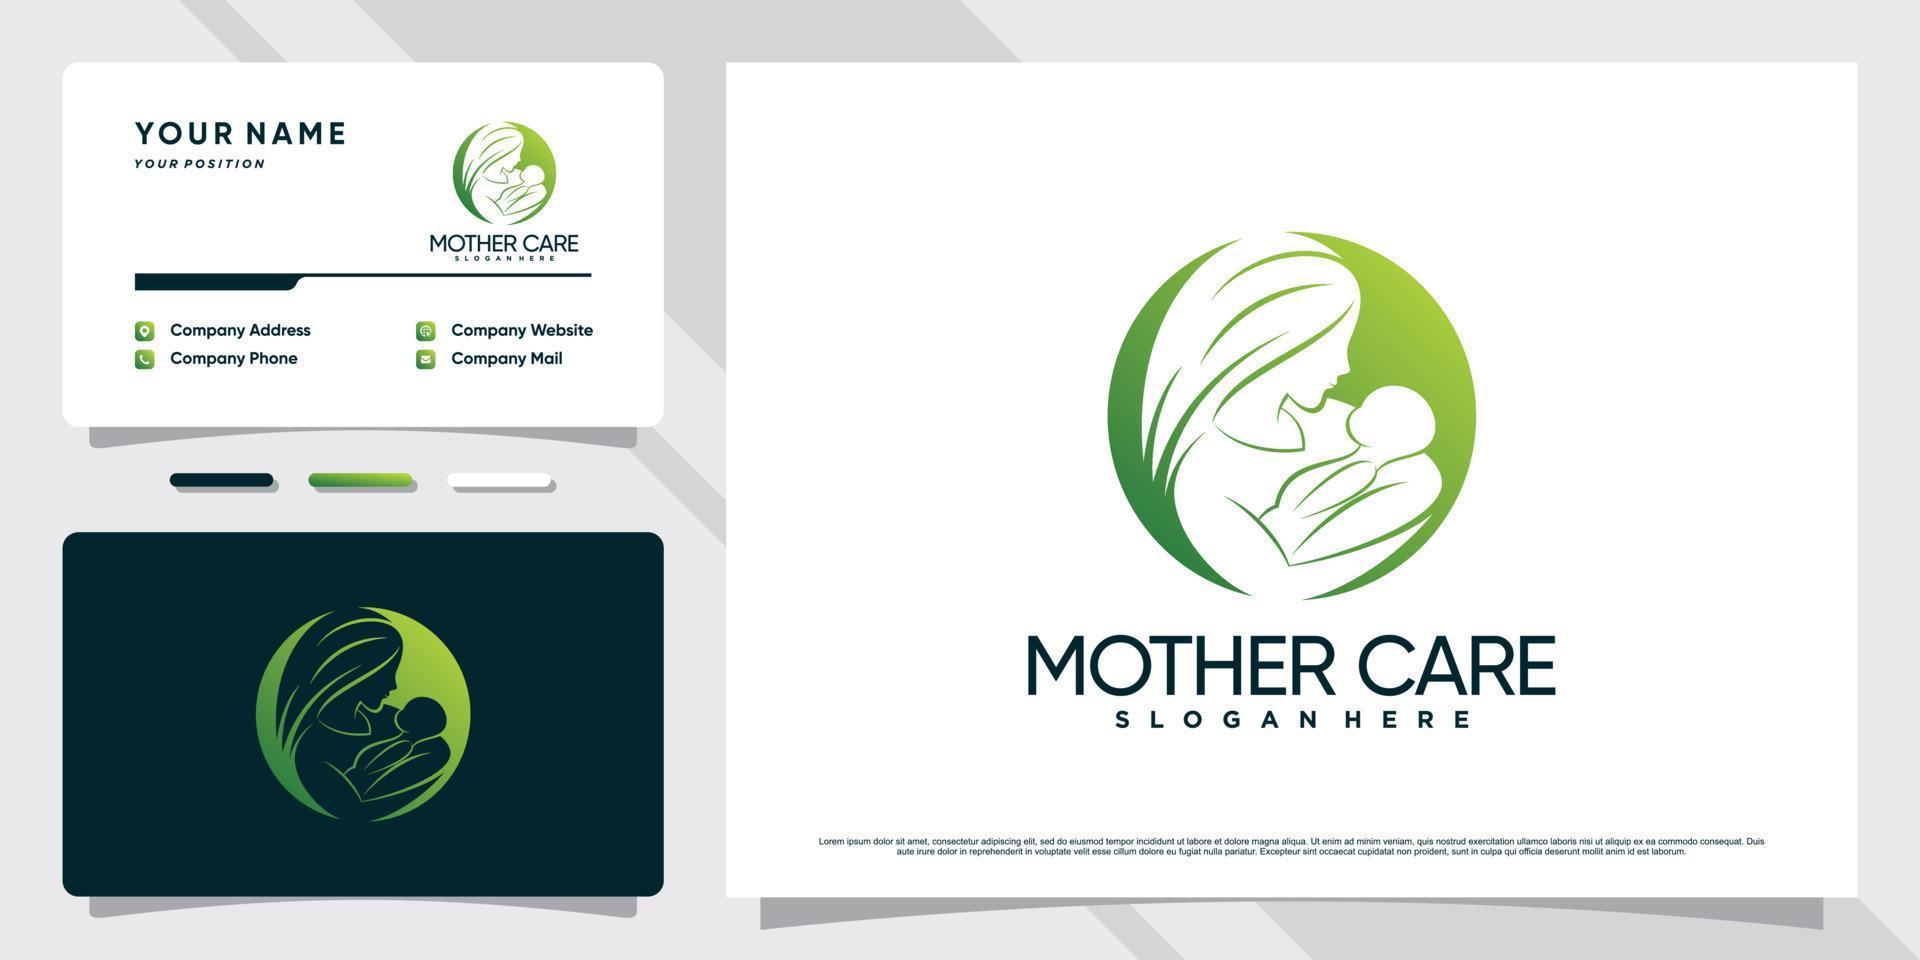 logotipo da mãe e do bebê com conceito de espaço negativo e vetor premium de design de cartão de visita